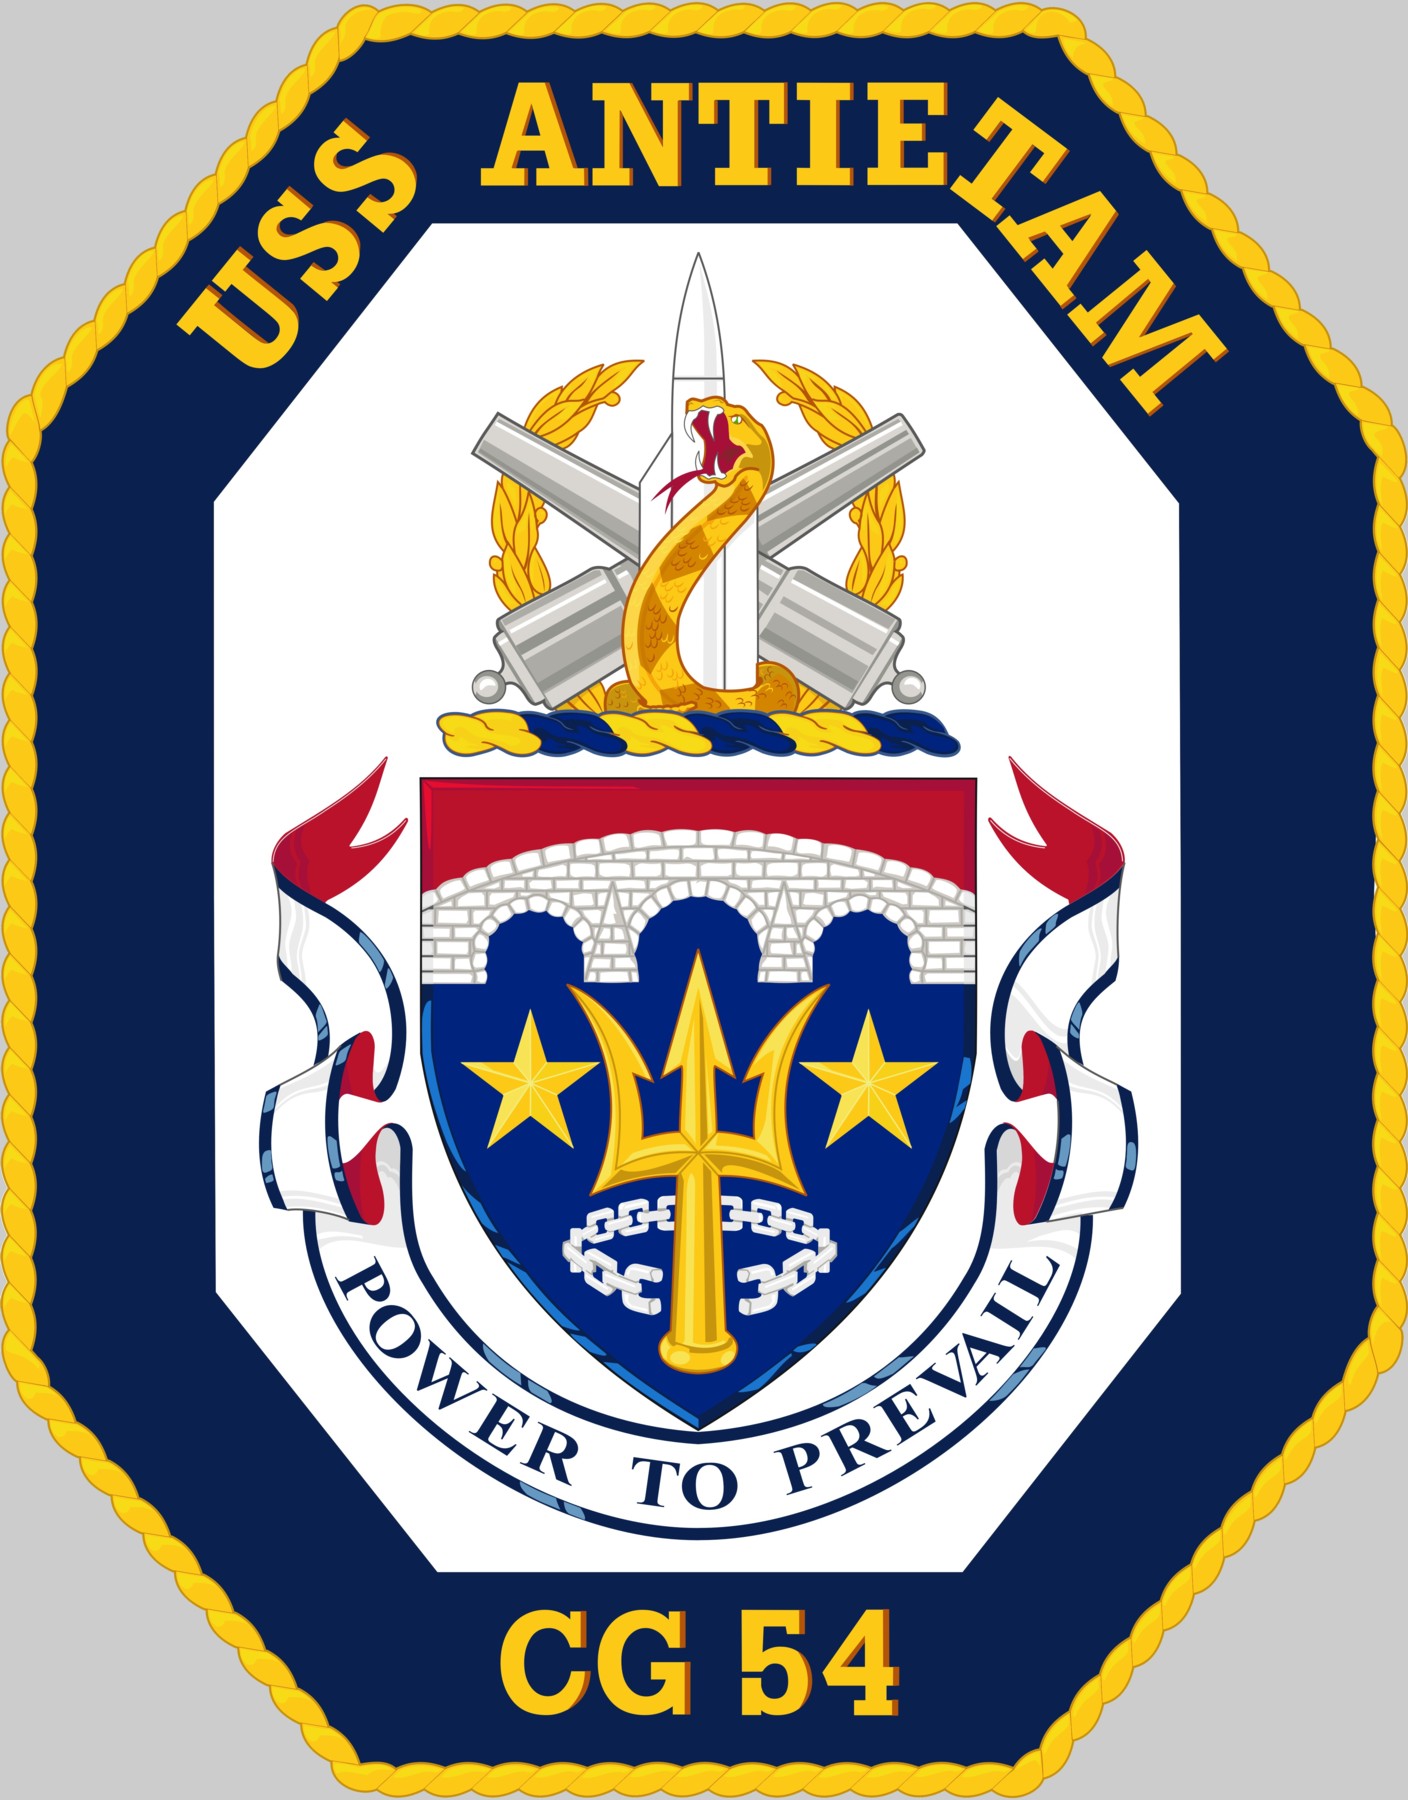 cg-54 uss antietam insignia crest patch badge ticonderoga class guided missile cruiser aegis us navy 03c